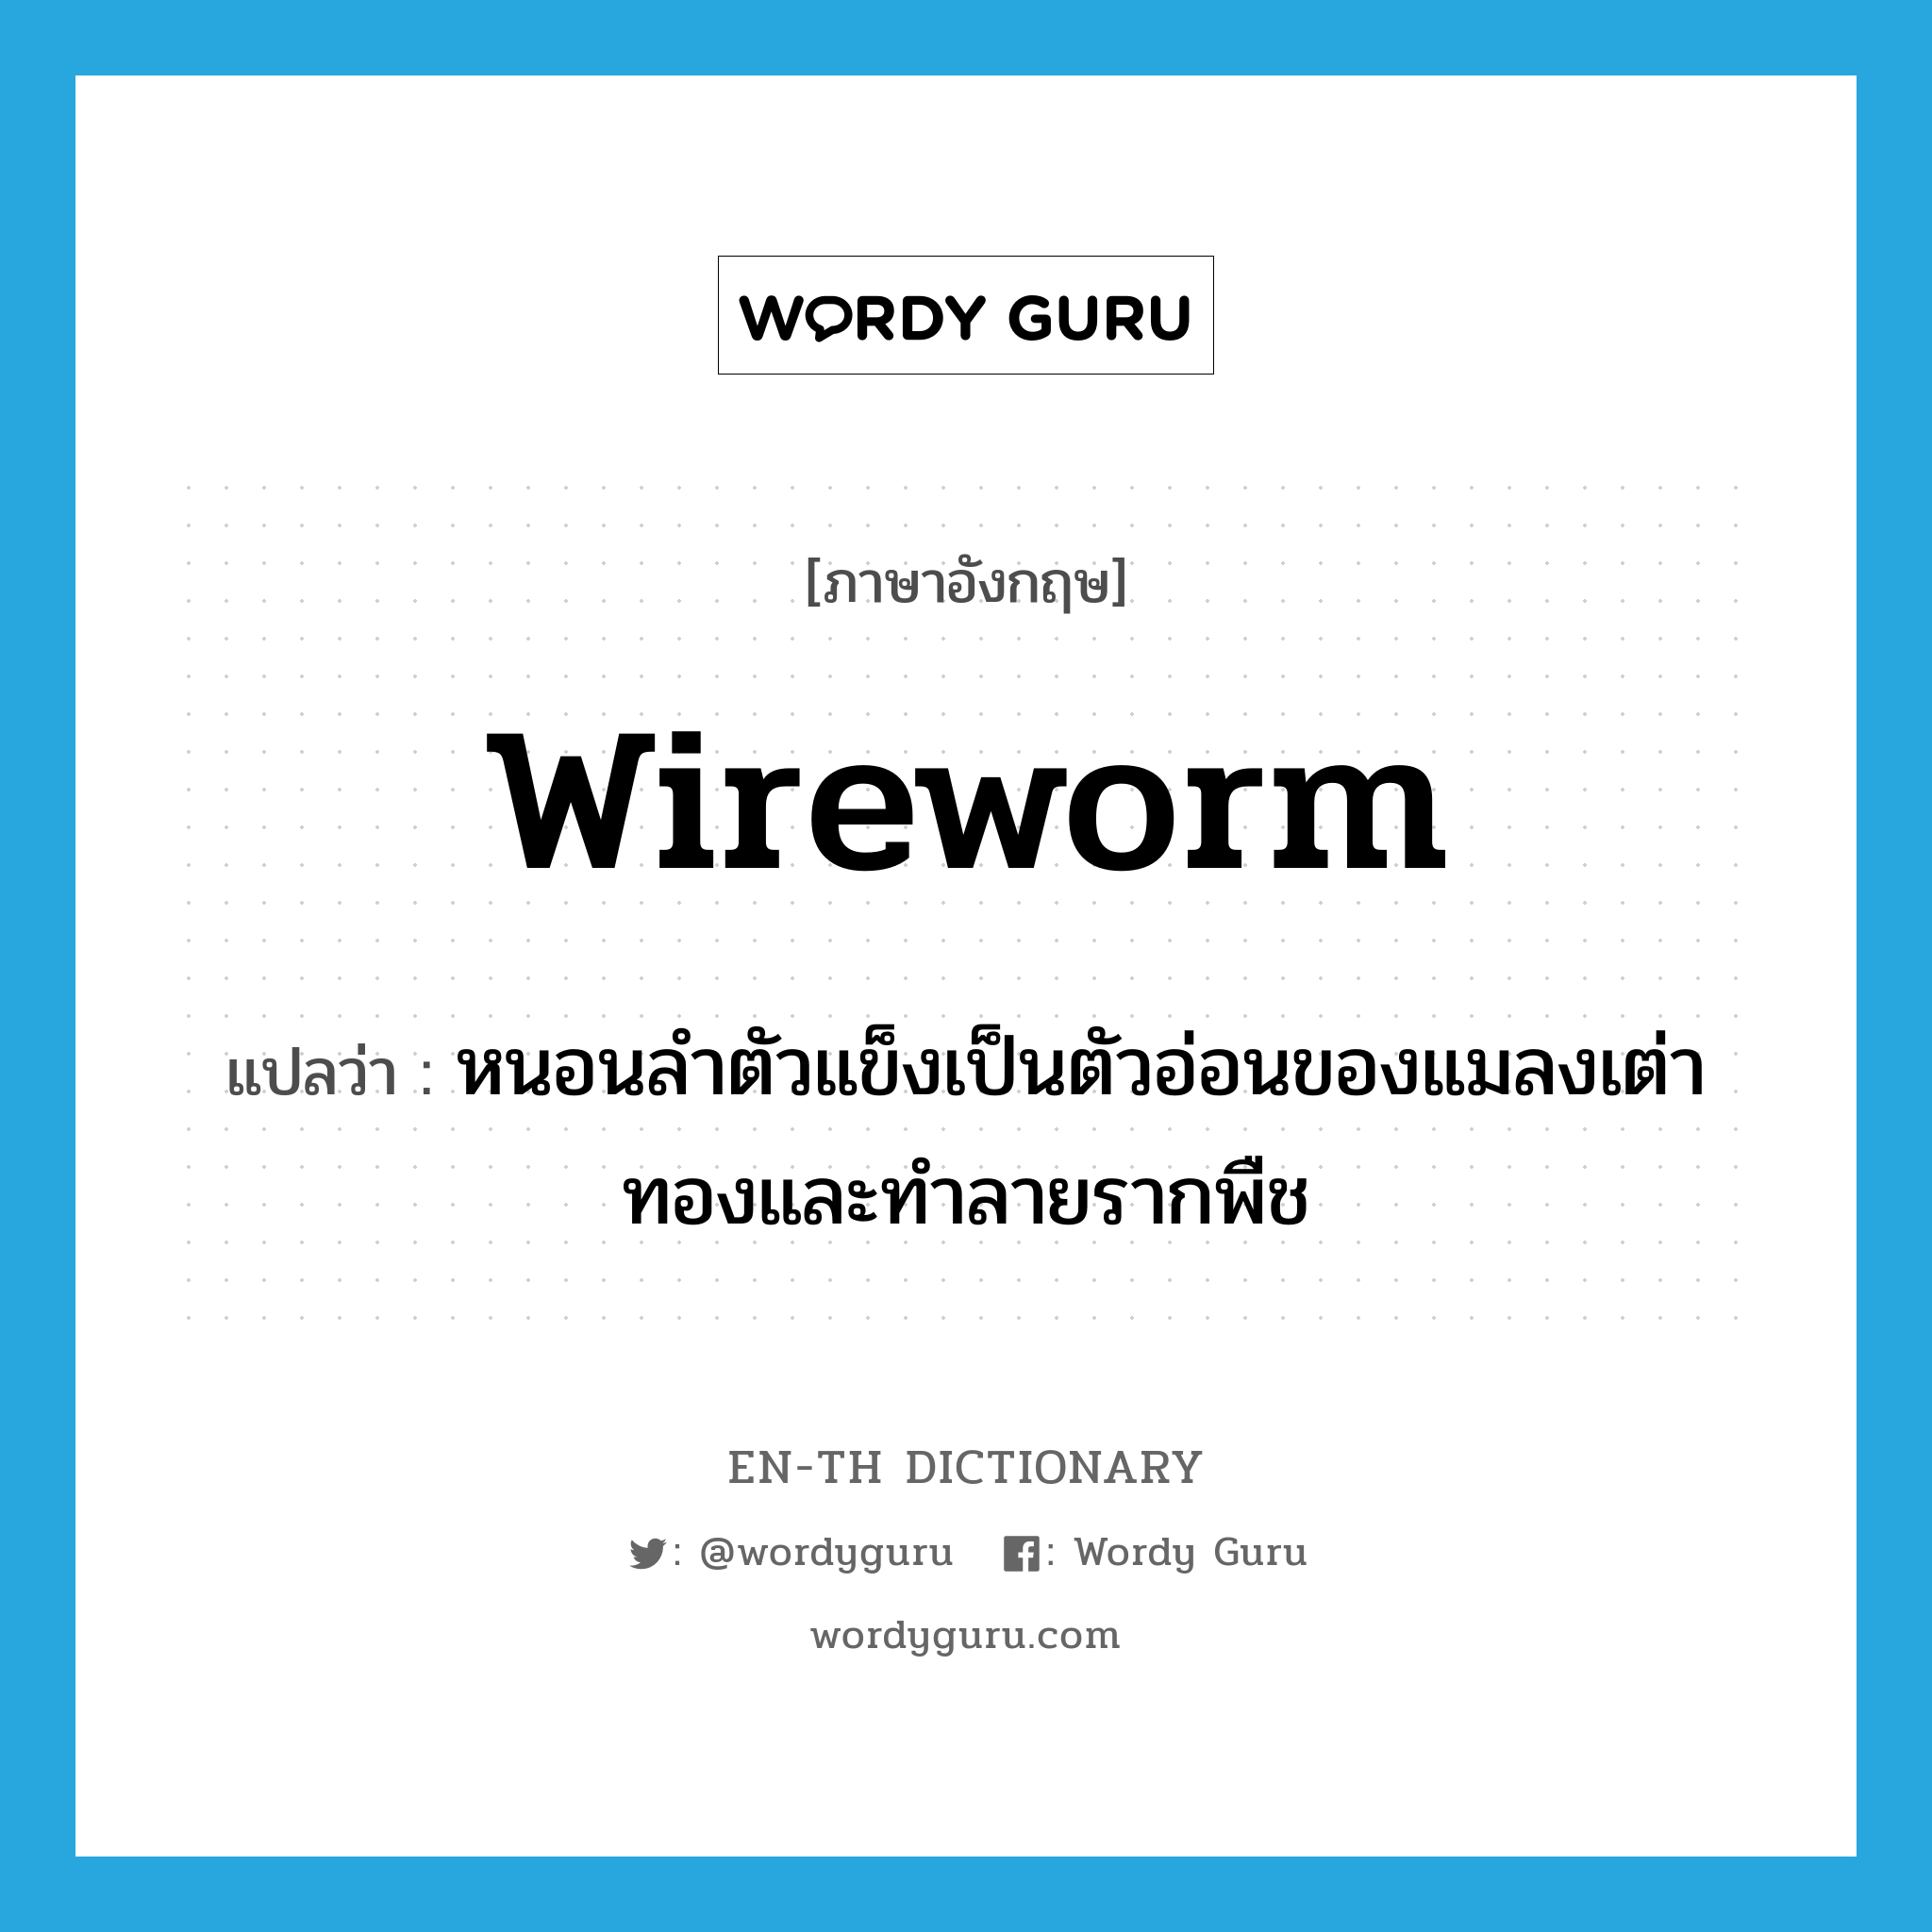 หนอนลำตัวแข็งเป็นตัวอ่อนของแมลงเต่าทองและทำลายรากพืช ภาษาอังกฤษ?, คำศัพท์ภาษาอังกฤษ หนอนลำตัวแข็งเป็นตัวอ่อนของแมลงเต่าทองและทำลายรากพืช แปลว่า wireworm ประเภท N หมวด N